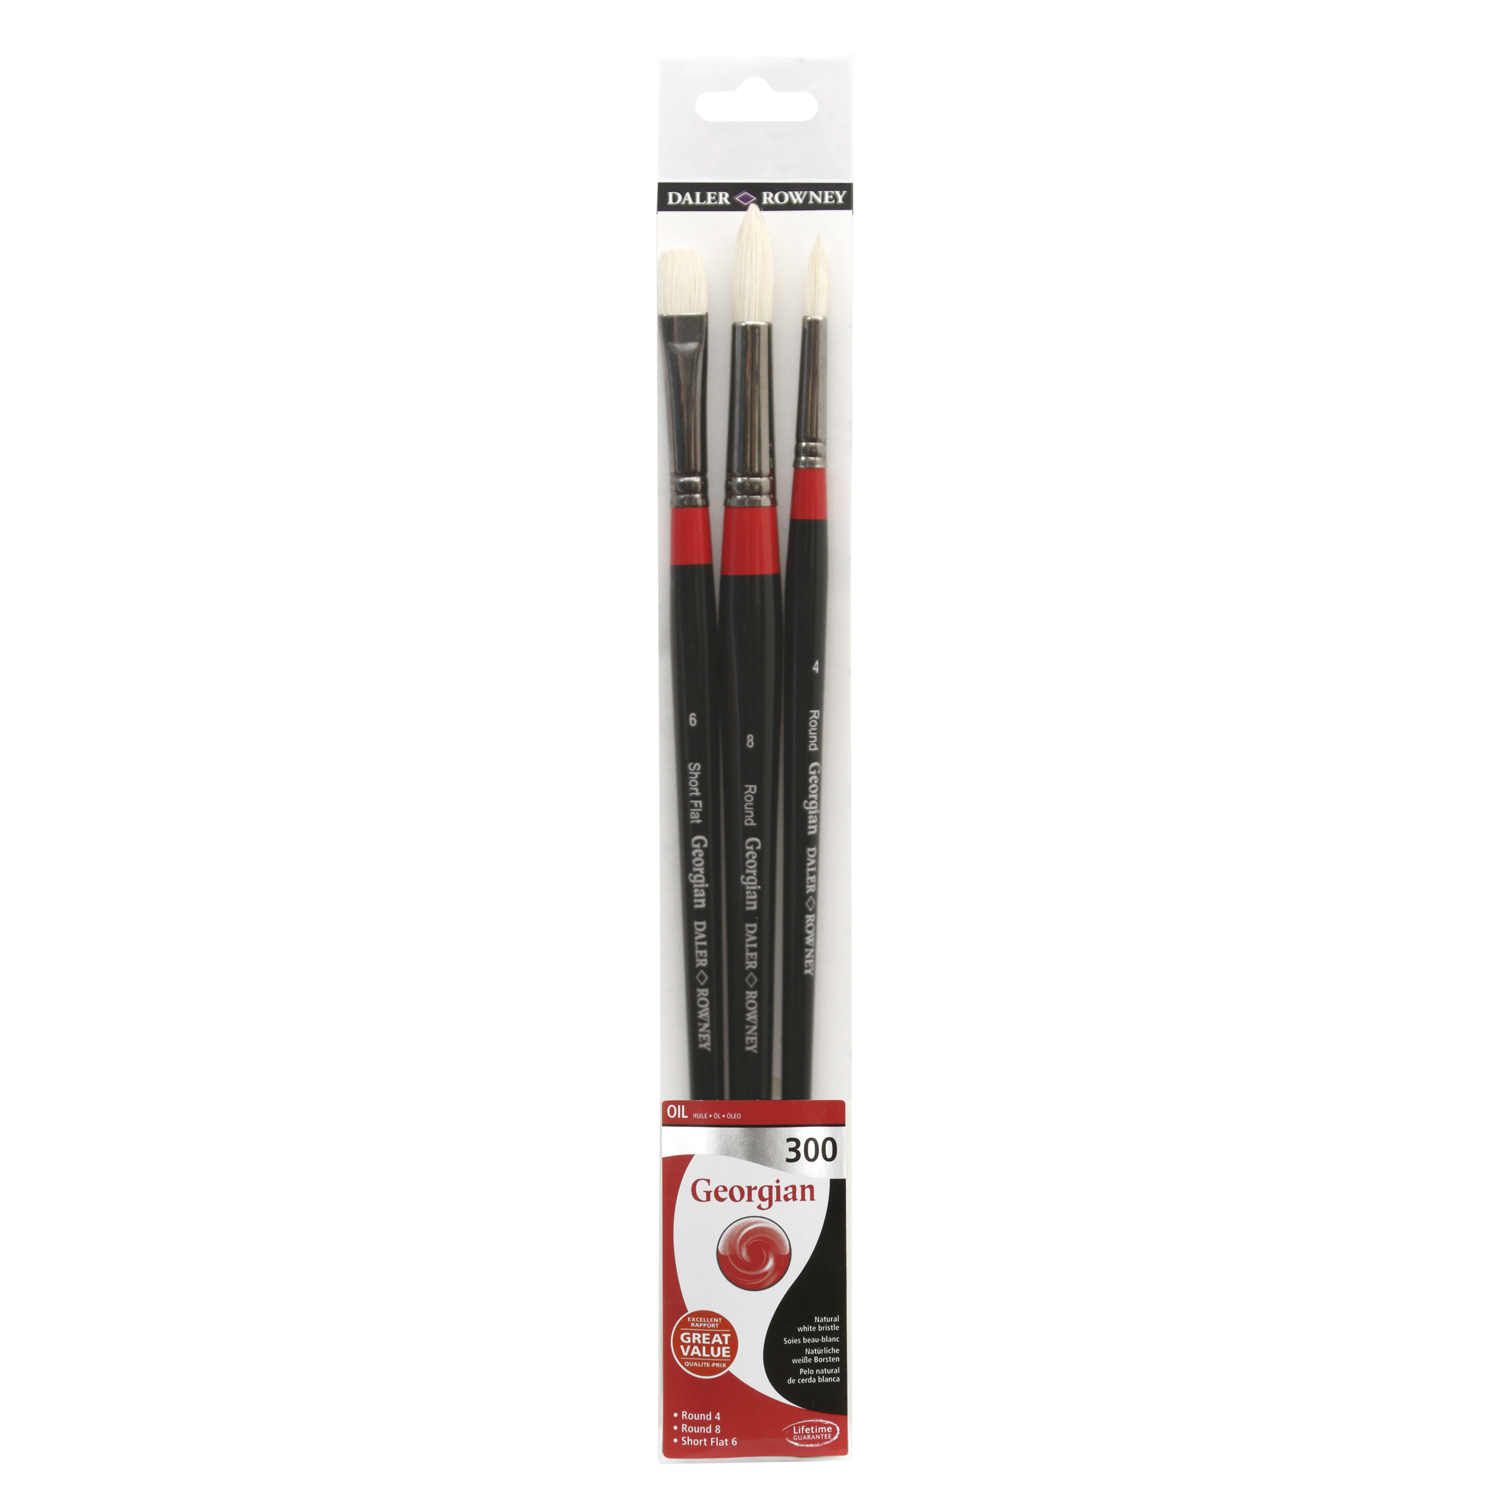 Pack of 3 Daler-Rowney Georgian Long Handle 300 Brushes Image